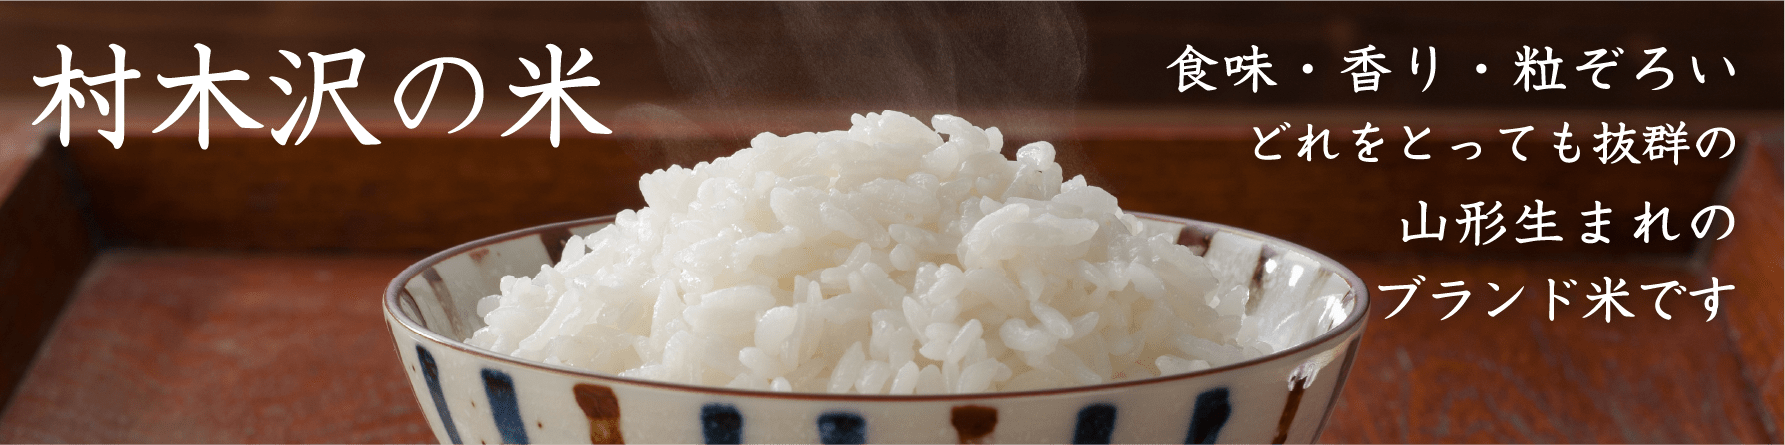 村木沢の米